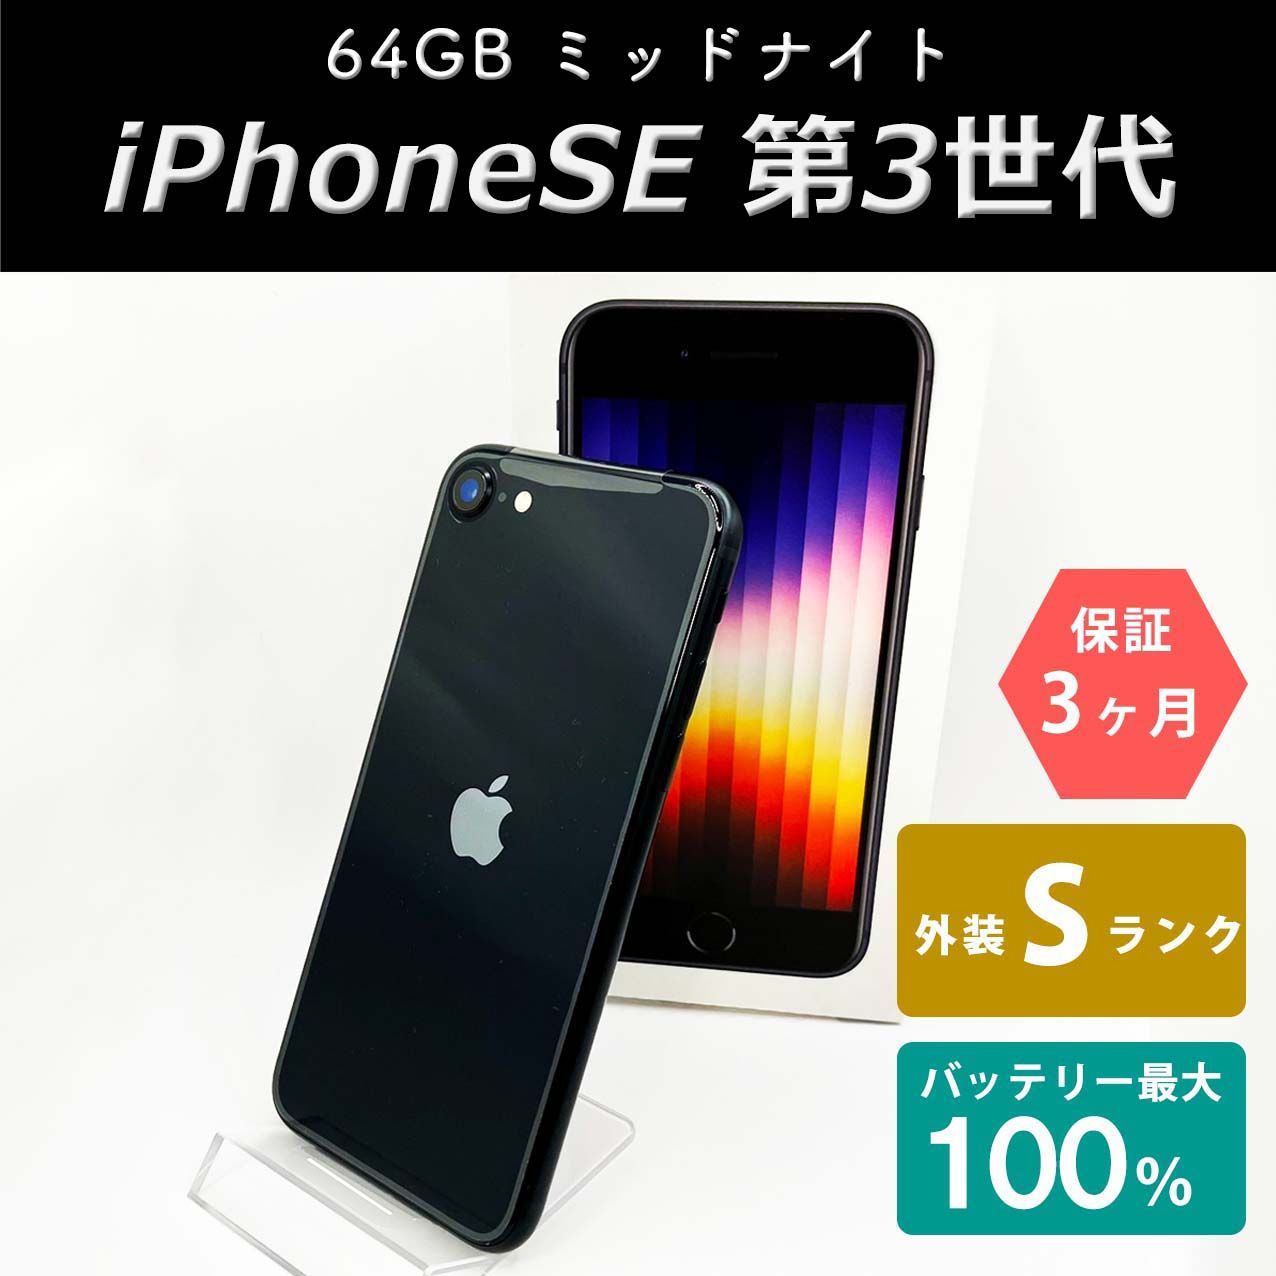 iPhoneSE 第3世代 64GB ミッドナイト Sランク 未使用品 SIMフリー